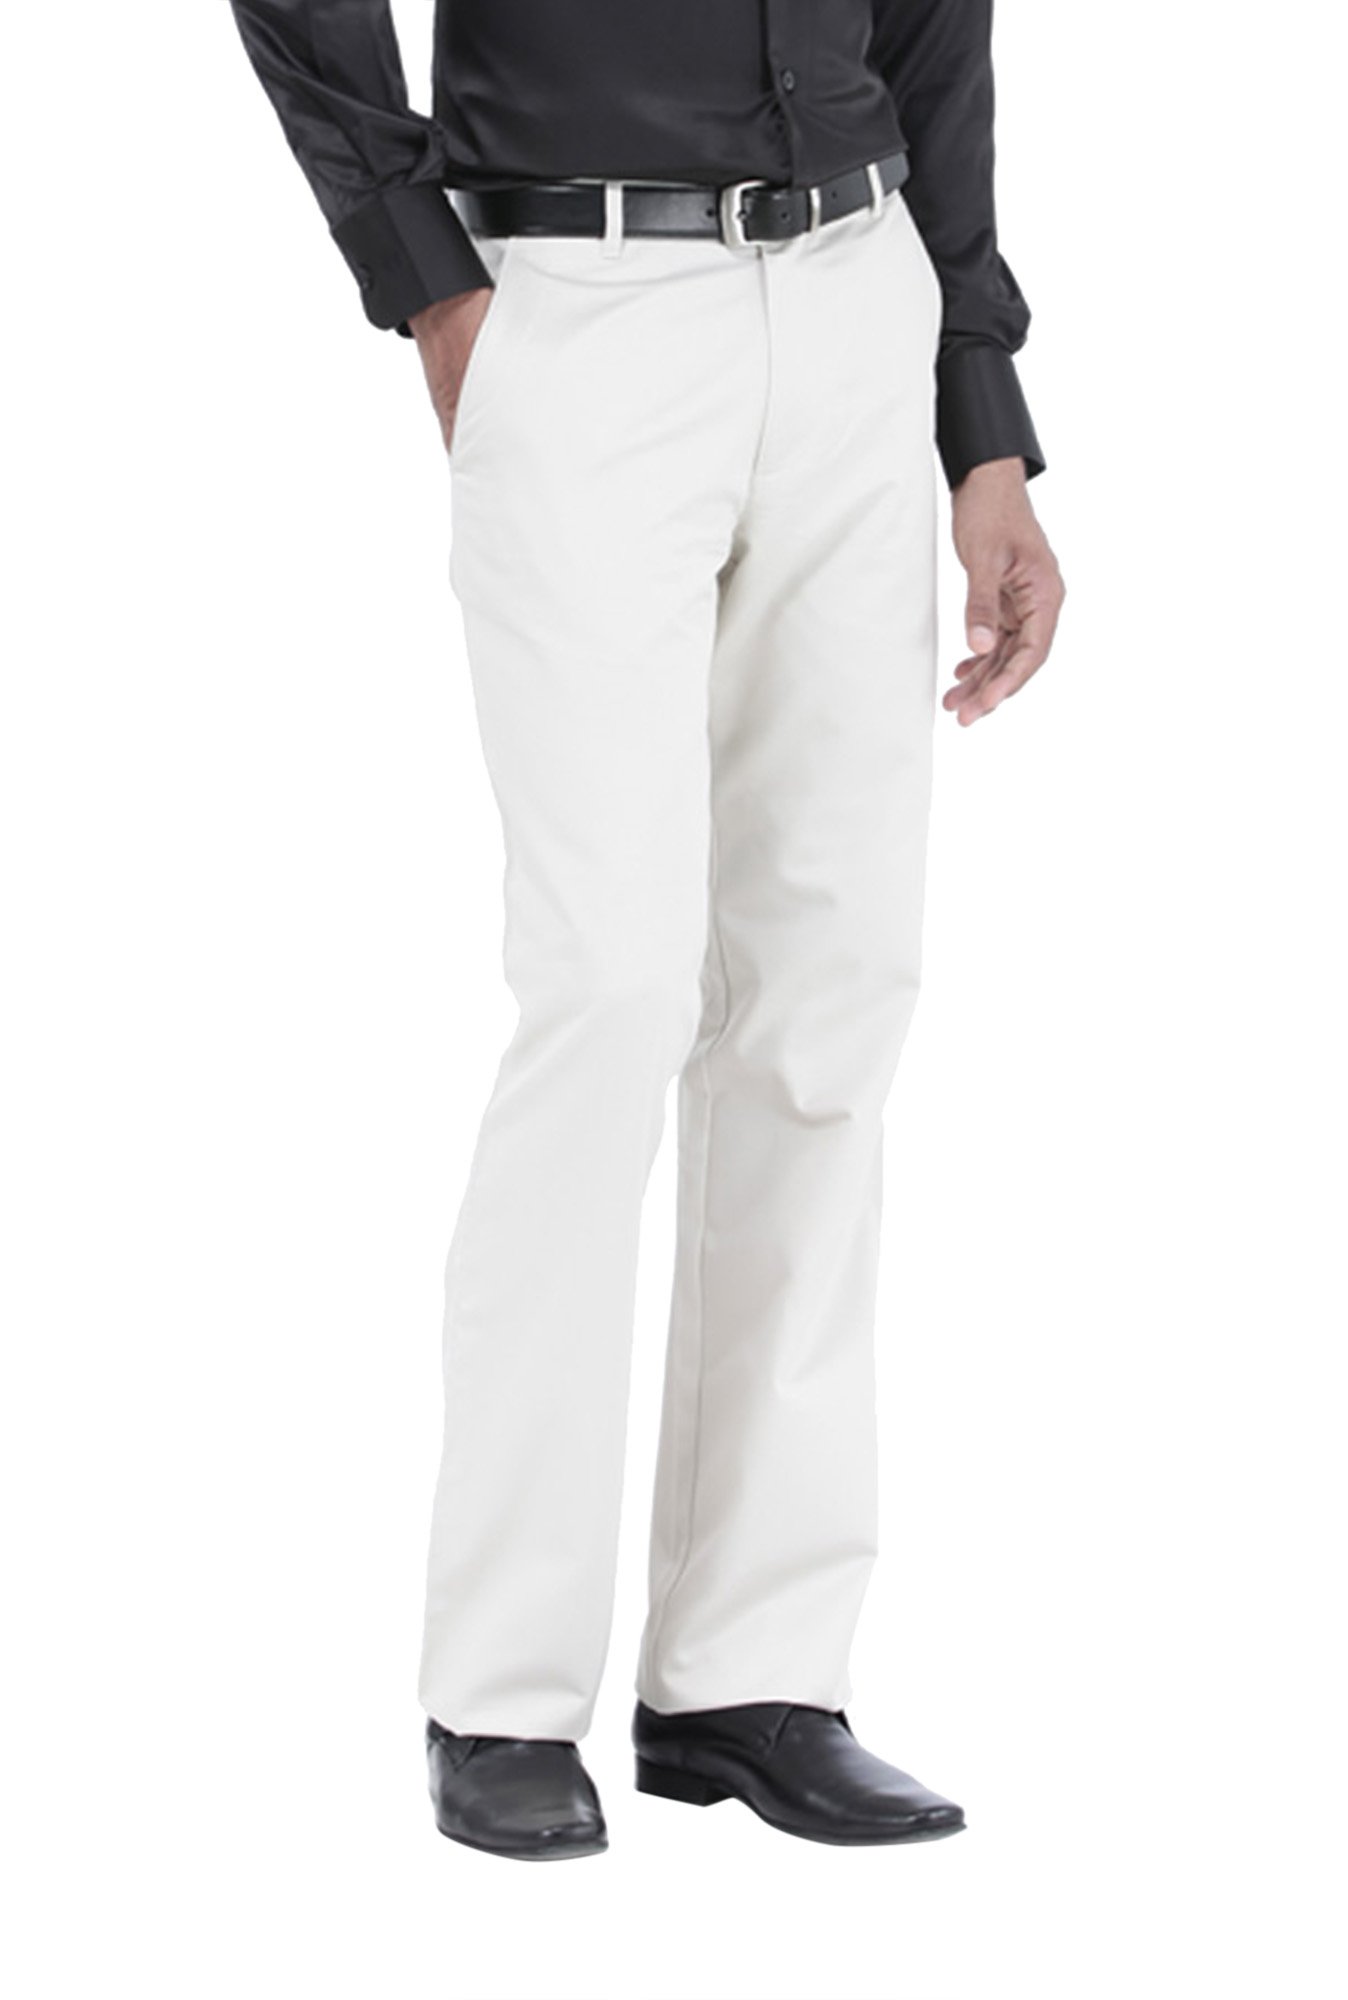 Plain Men White Formal Trouser Pant, Slim Fit at Rs 320 in Bhilwara | ID:  2851886538097